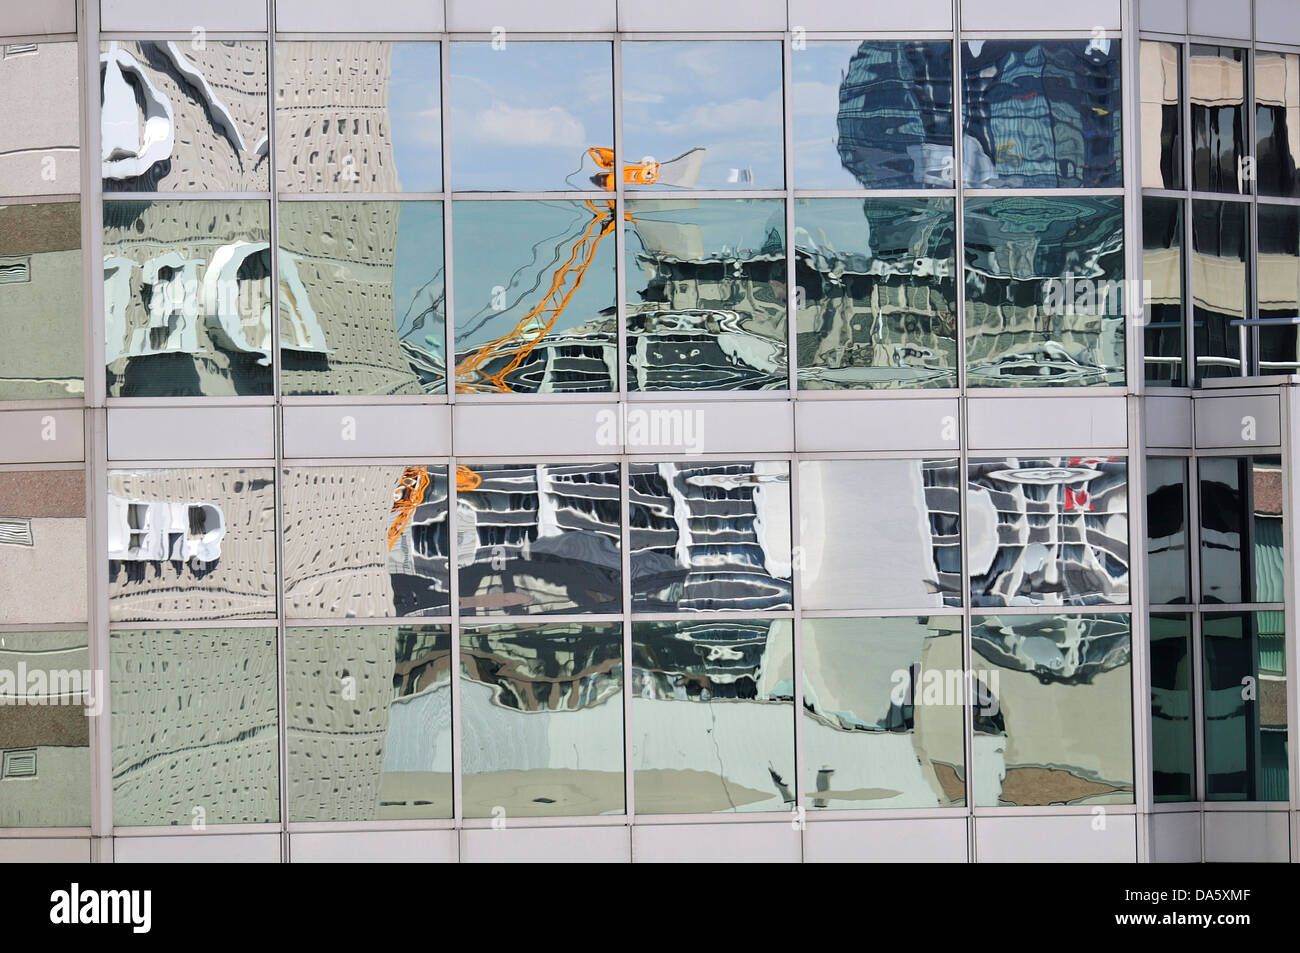 Reflection, Toronto, Ontario, Canada, building, mirror, facade, abstract Stock Photo